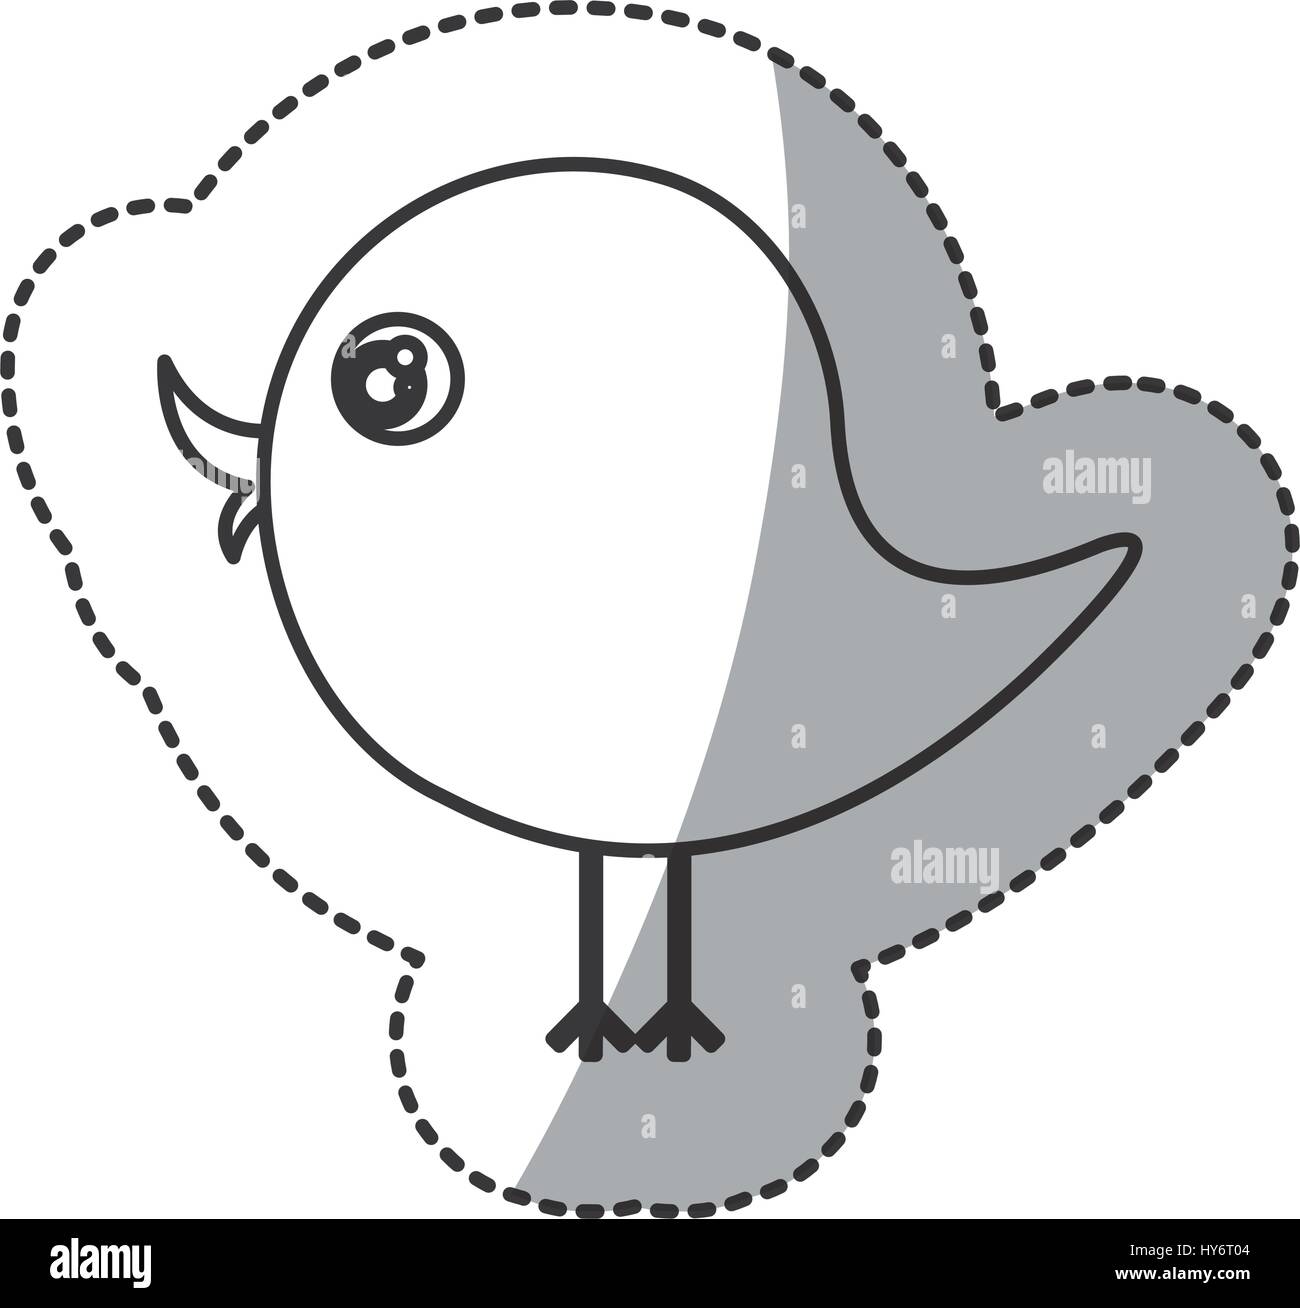 beautiful cartoon bird with big eyes Stock Vector Image & Art - Alamy